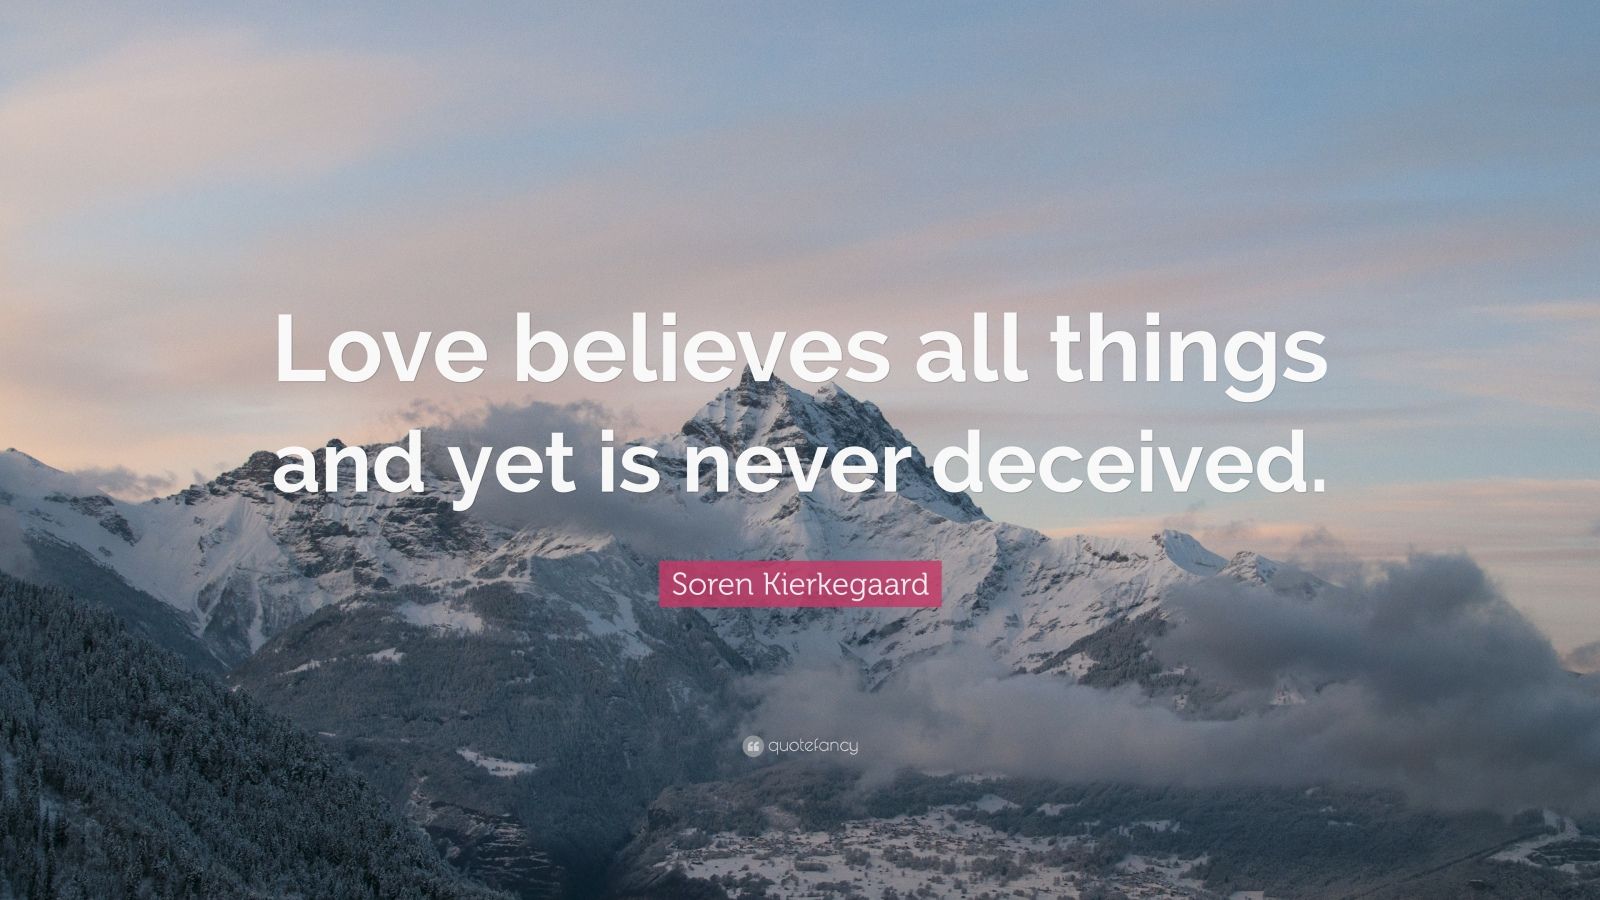 soren kierkegaard quote: "love believes all things and yet is